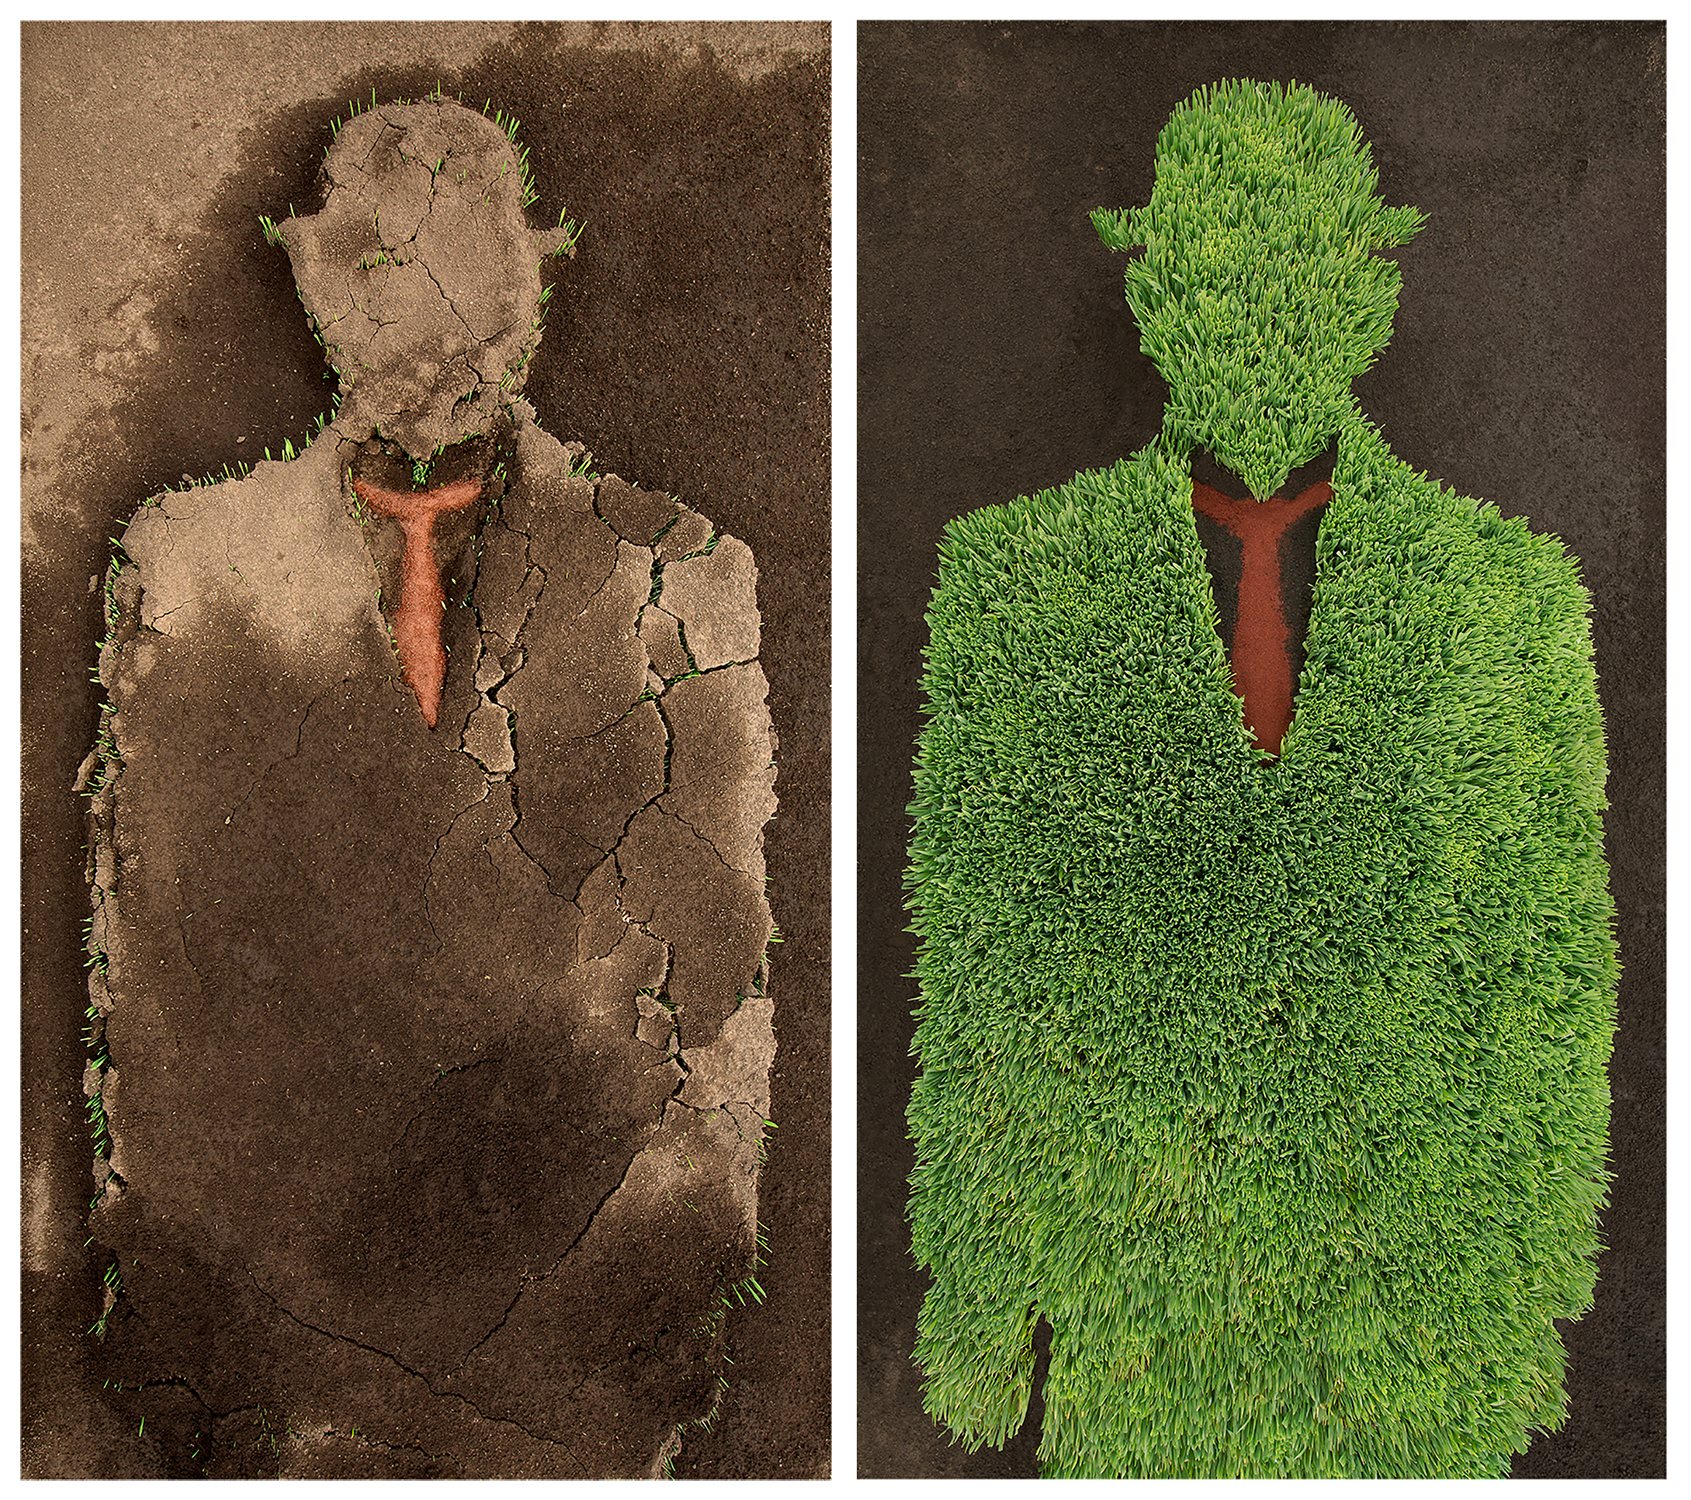  Magritte Diptych, 2015  Digital Print Mounted on Diasec  87” x 87”     Díptico de Magritte, 2015  Impresión Digital Montada en Acrílico por Emulsión (Diasec)  220 cm x 220 cm 